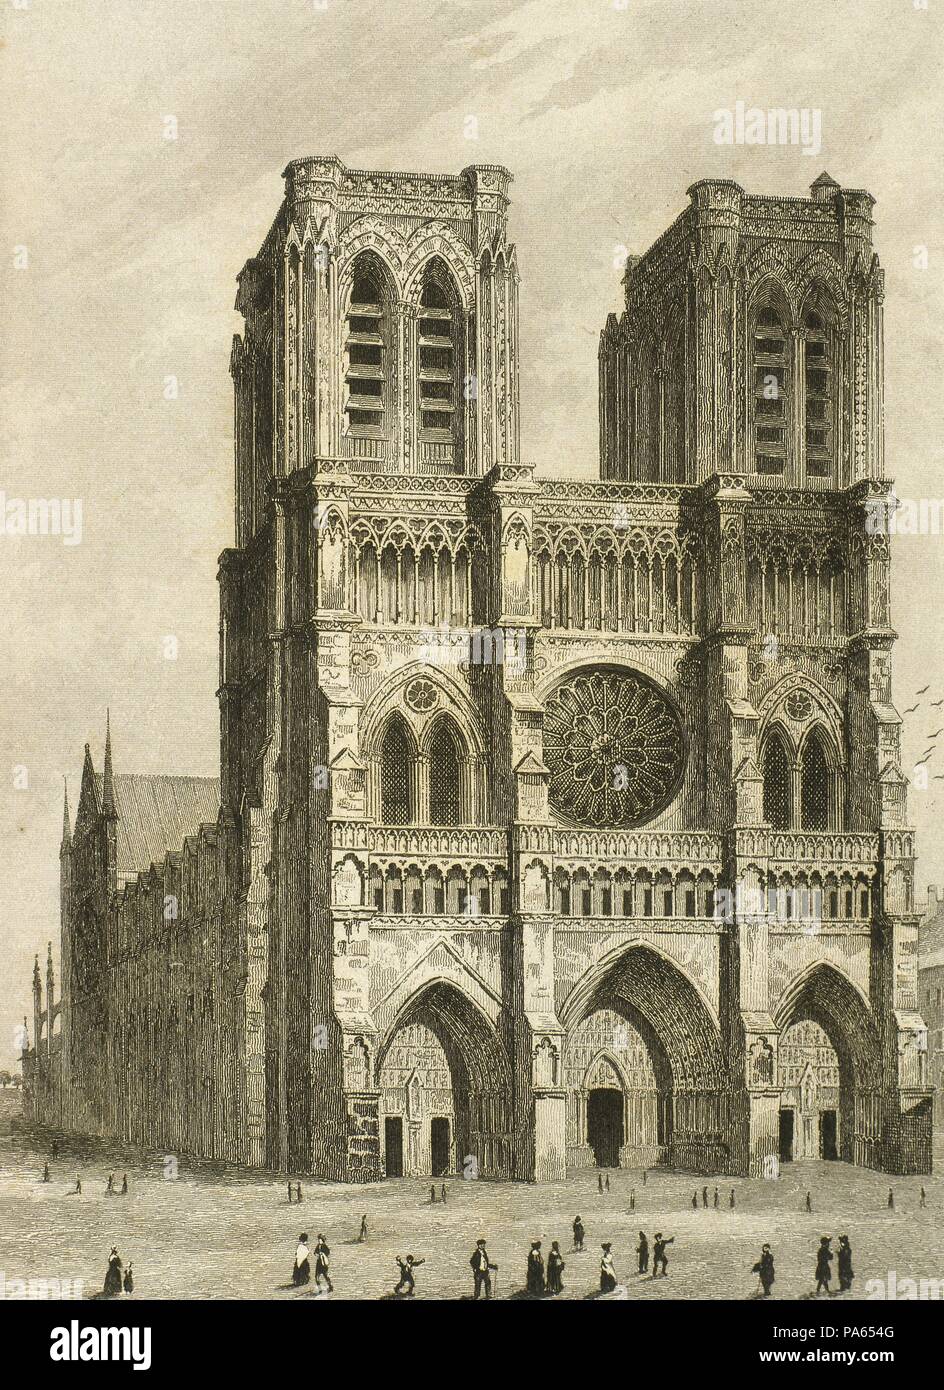 Catedral de Notre-Dame, París, Francia. Su construcción fue iniciada en  1163 siendo finalizada en 1345. Dibujo por Gaucherel. Grabado, 1841.  